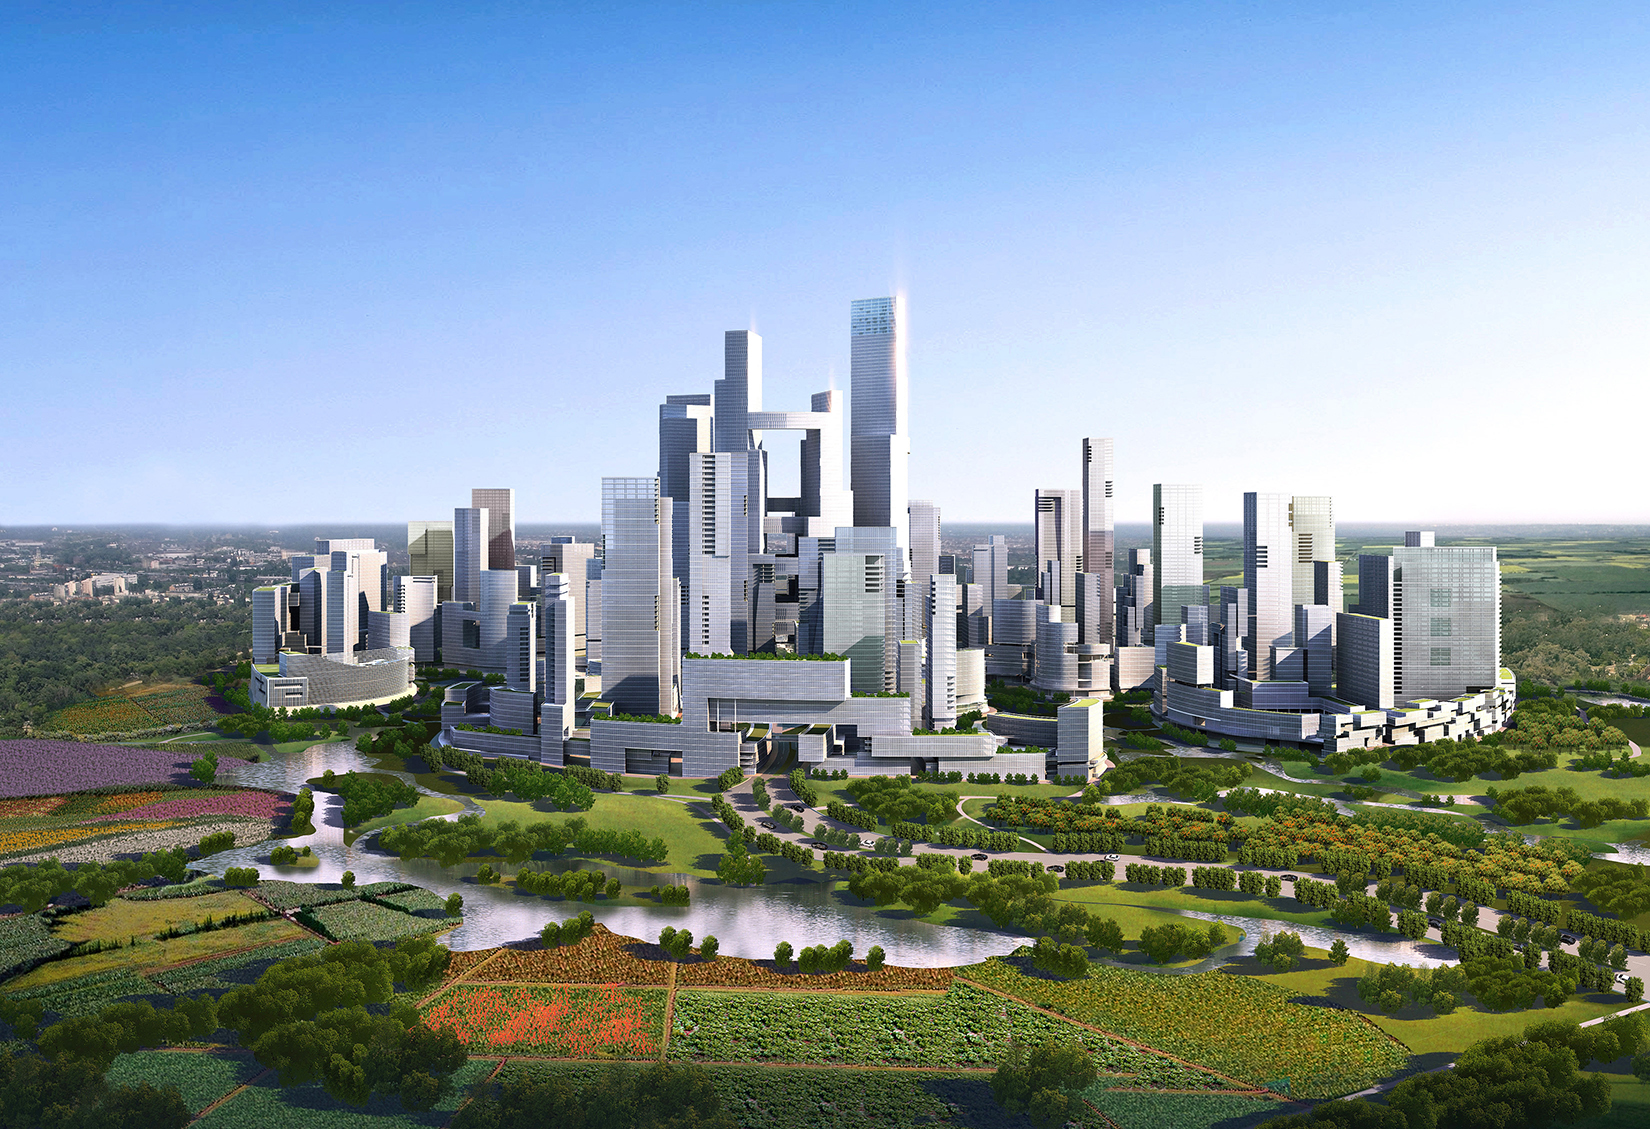 Tianfu Ecological City overall